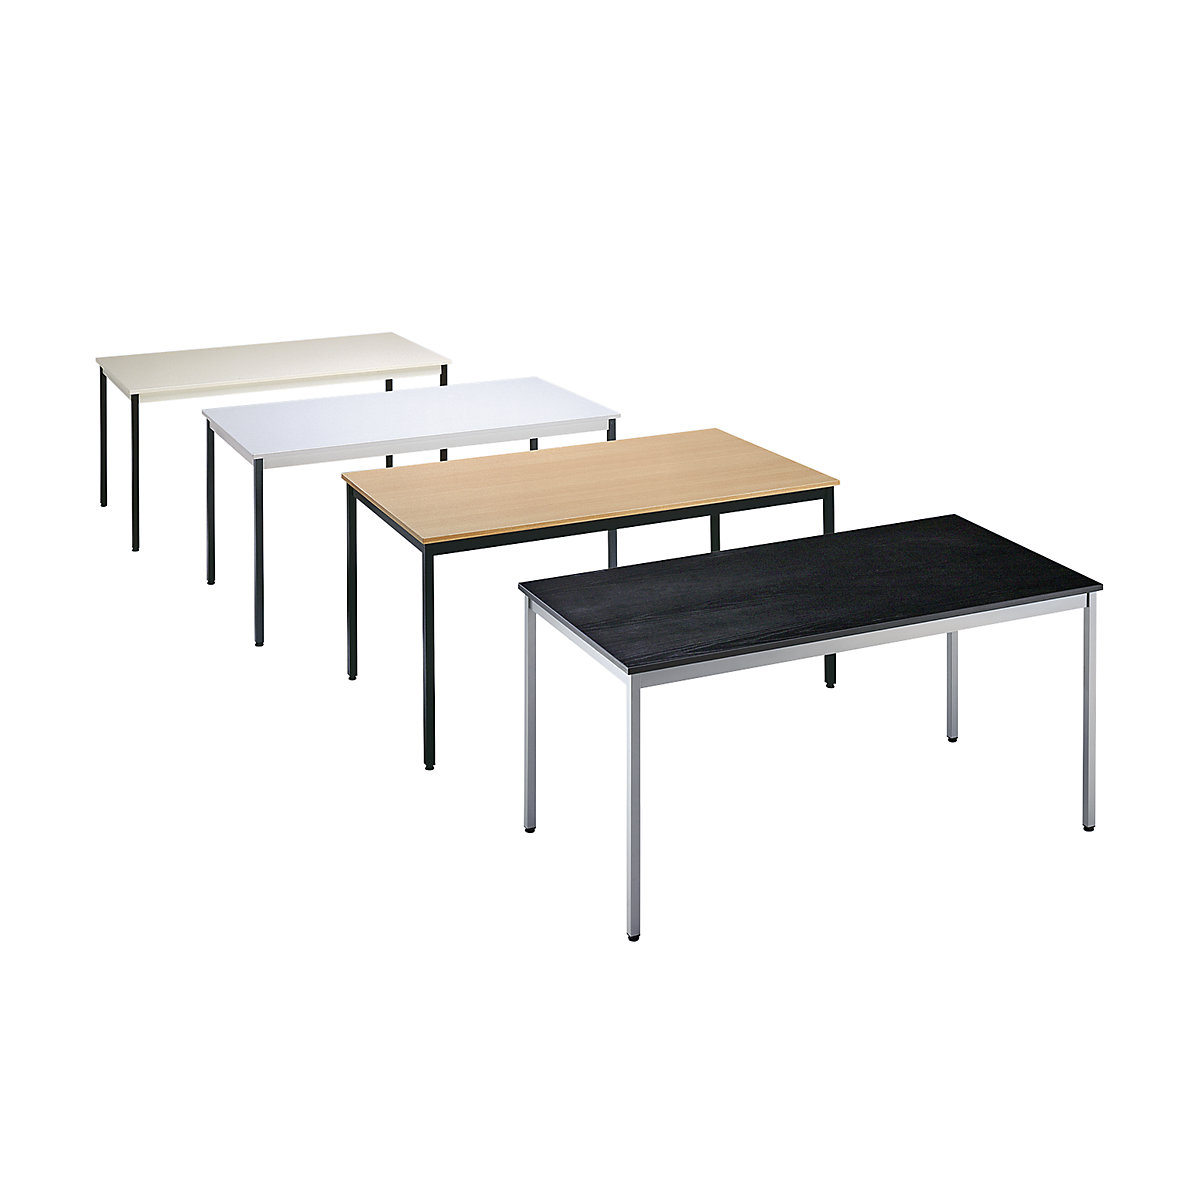 Universele tafel – eurokraft basic, rechthoekig, h x b x d = 740 x 700 x 600 mm, blad beige, frame bruin-1